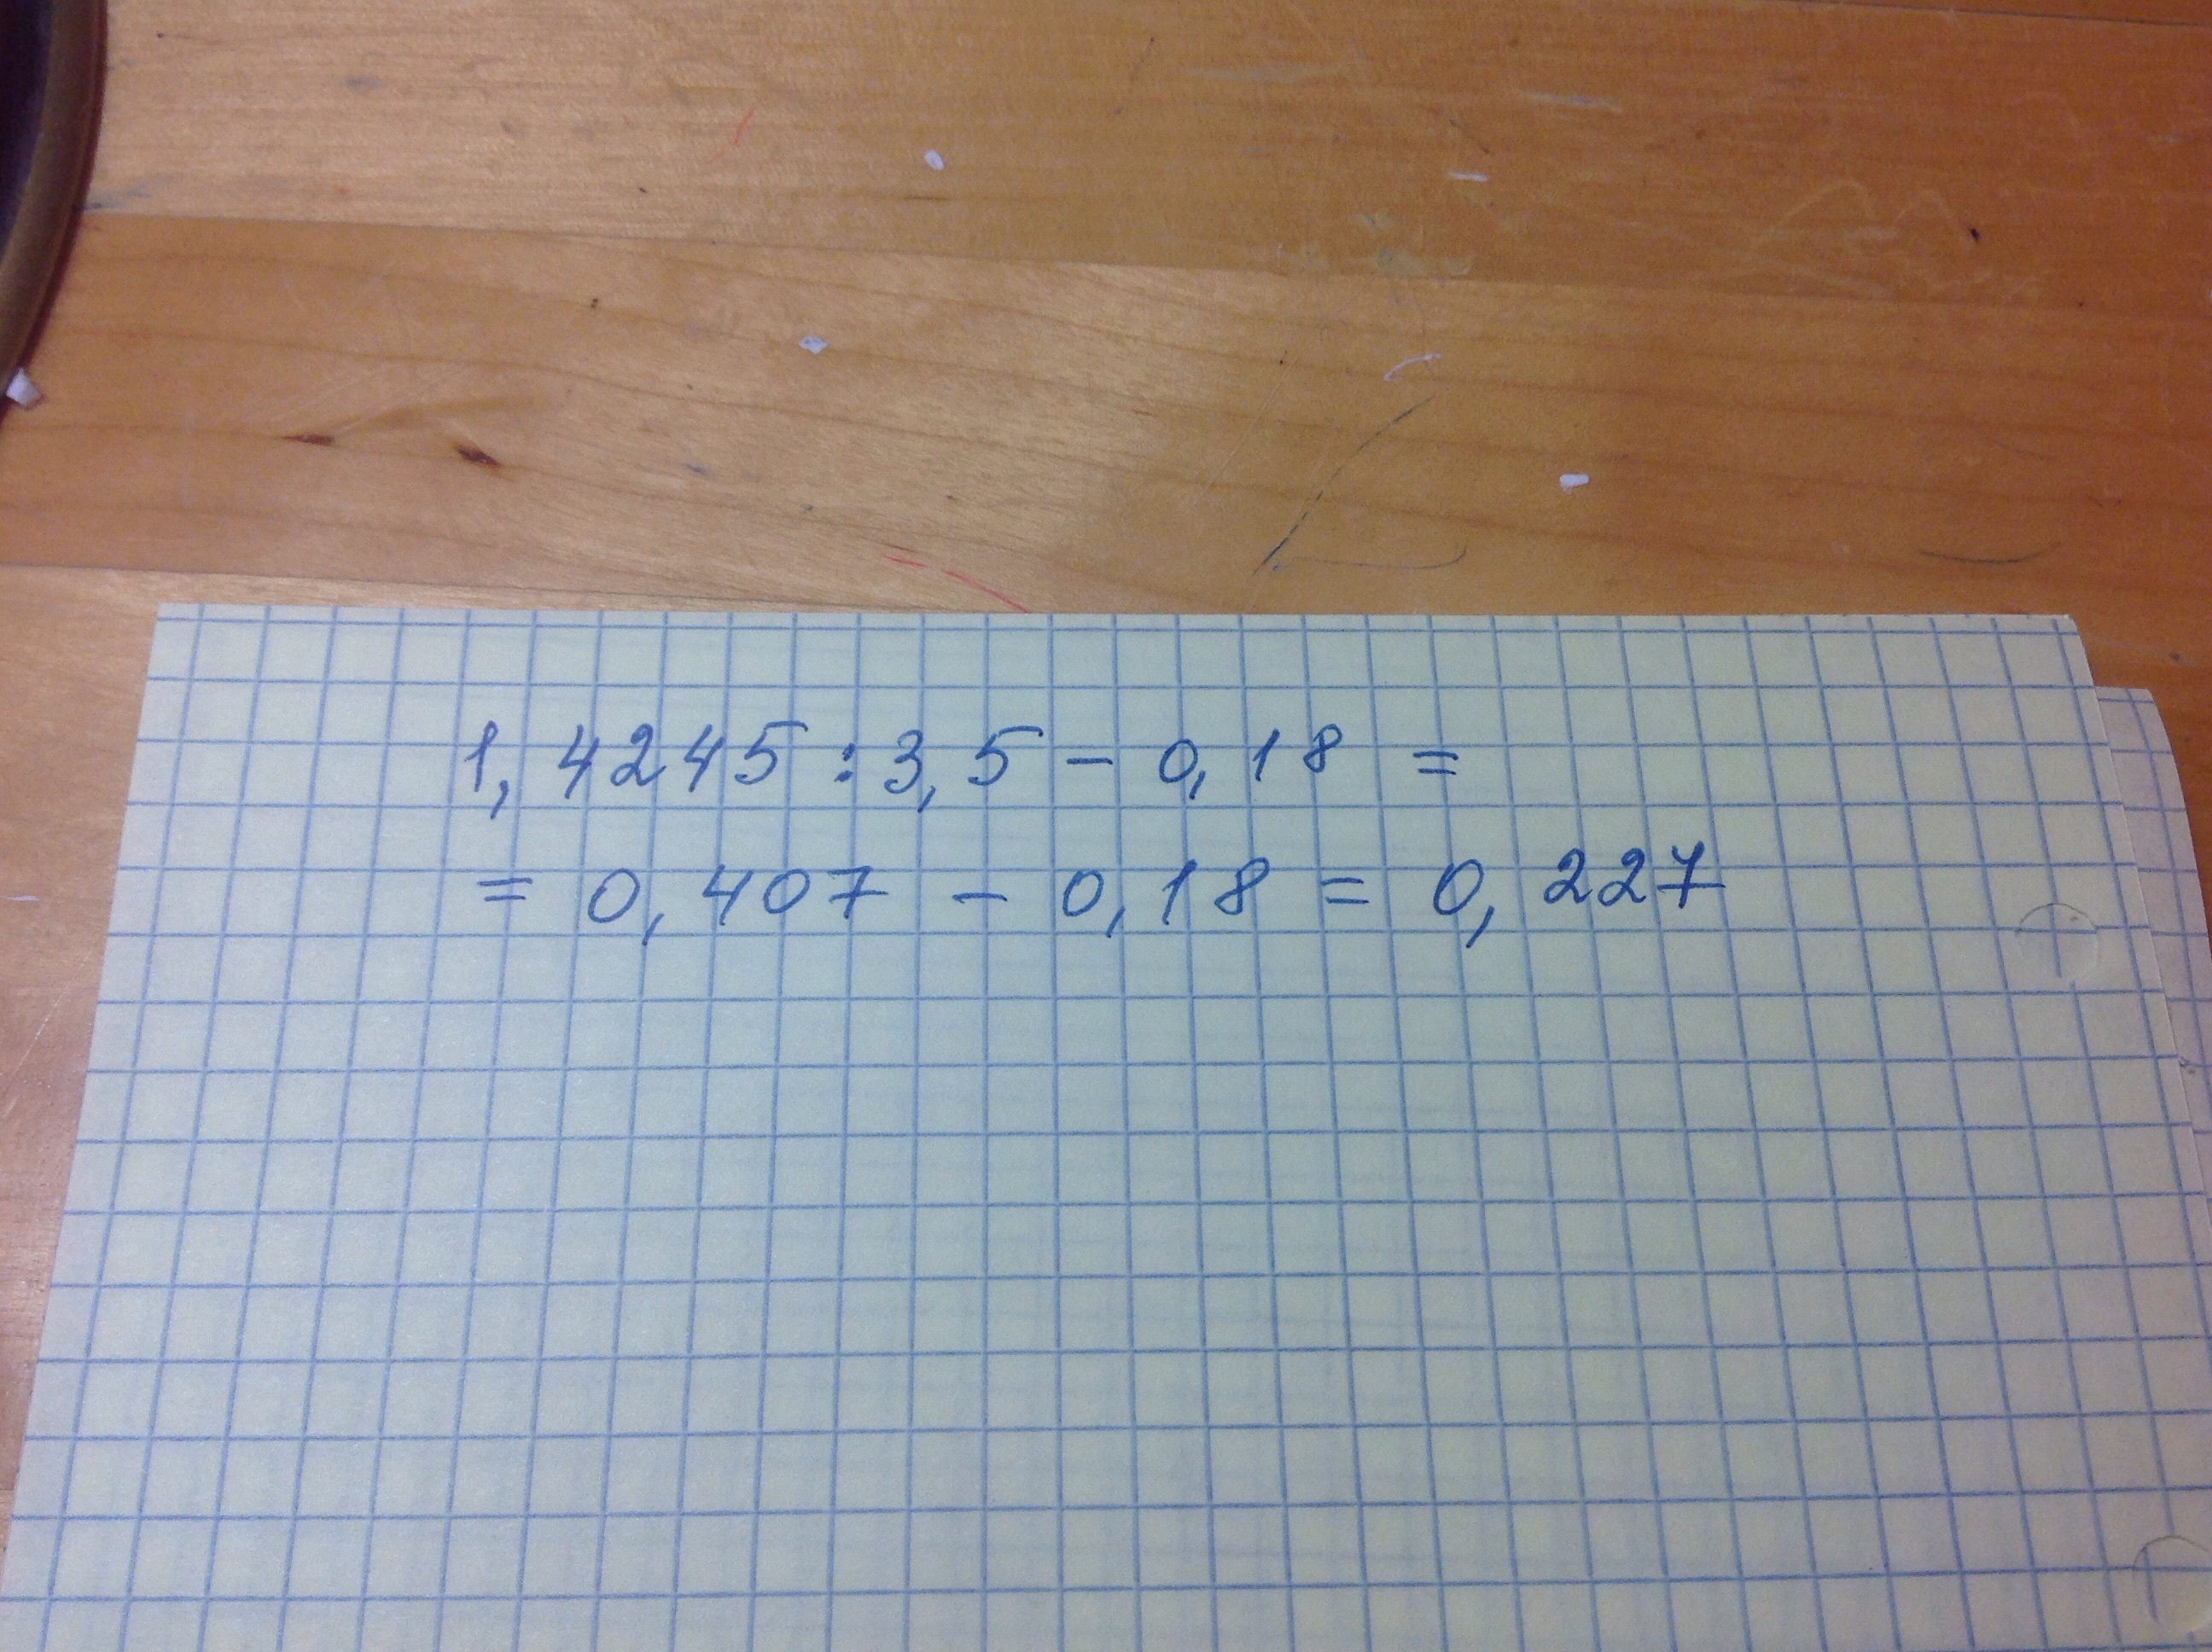 Как решить пример 1,4245:3,5. Выполни действия 1000 900 2 835 5.